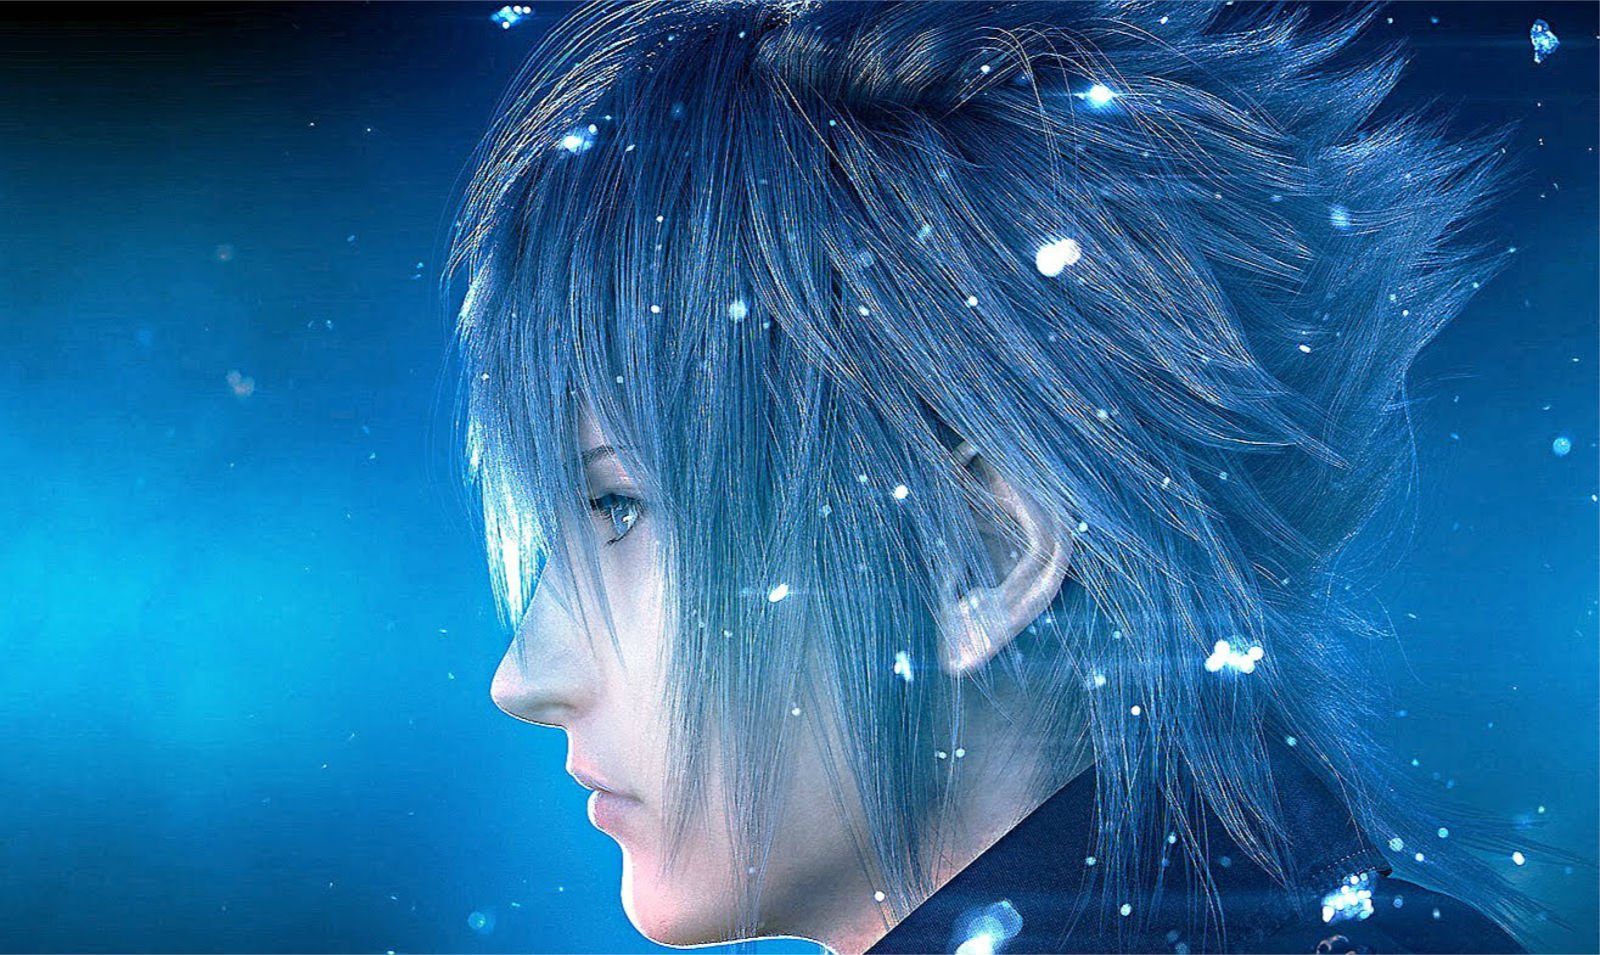 Descarga gratuita de fondo de pantalla para móvil de Final Fantasy Xv, Fainaru Fantajî, Videojuego.